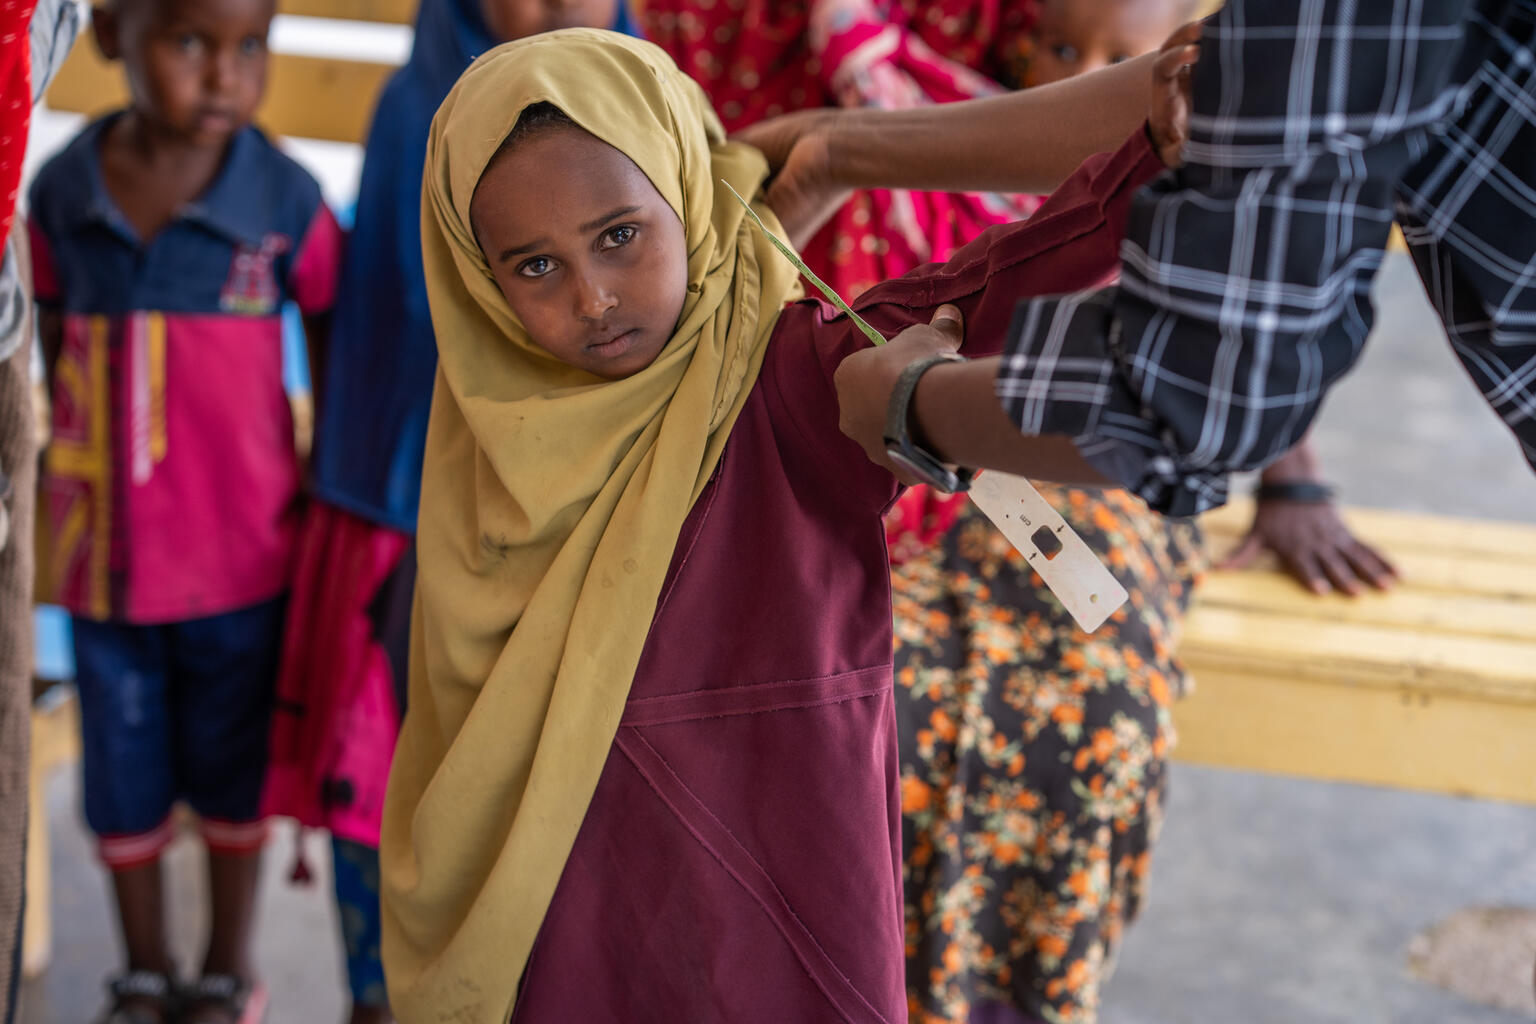 保健センターで栄養不良のチェックを受けるアイシャちゃん（4歳）。干ばつが続き、コレラやはしかの脅威が高まる中、子どもたちは命にかかわるリスクに直面している。（ソマリア、2022年6月20日撮影）